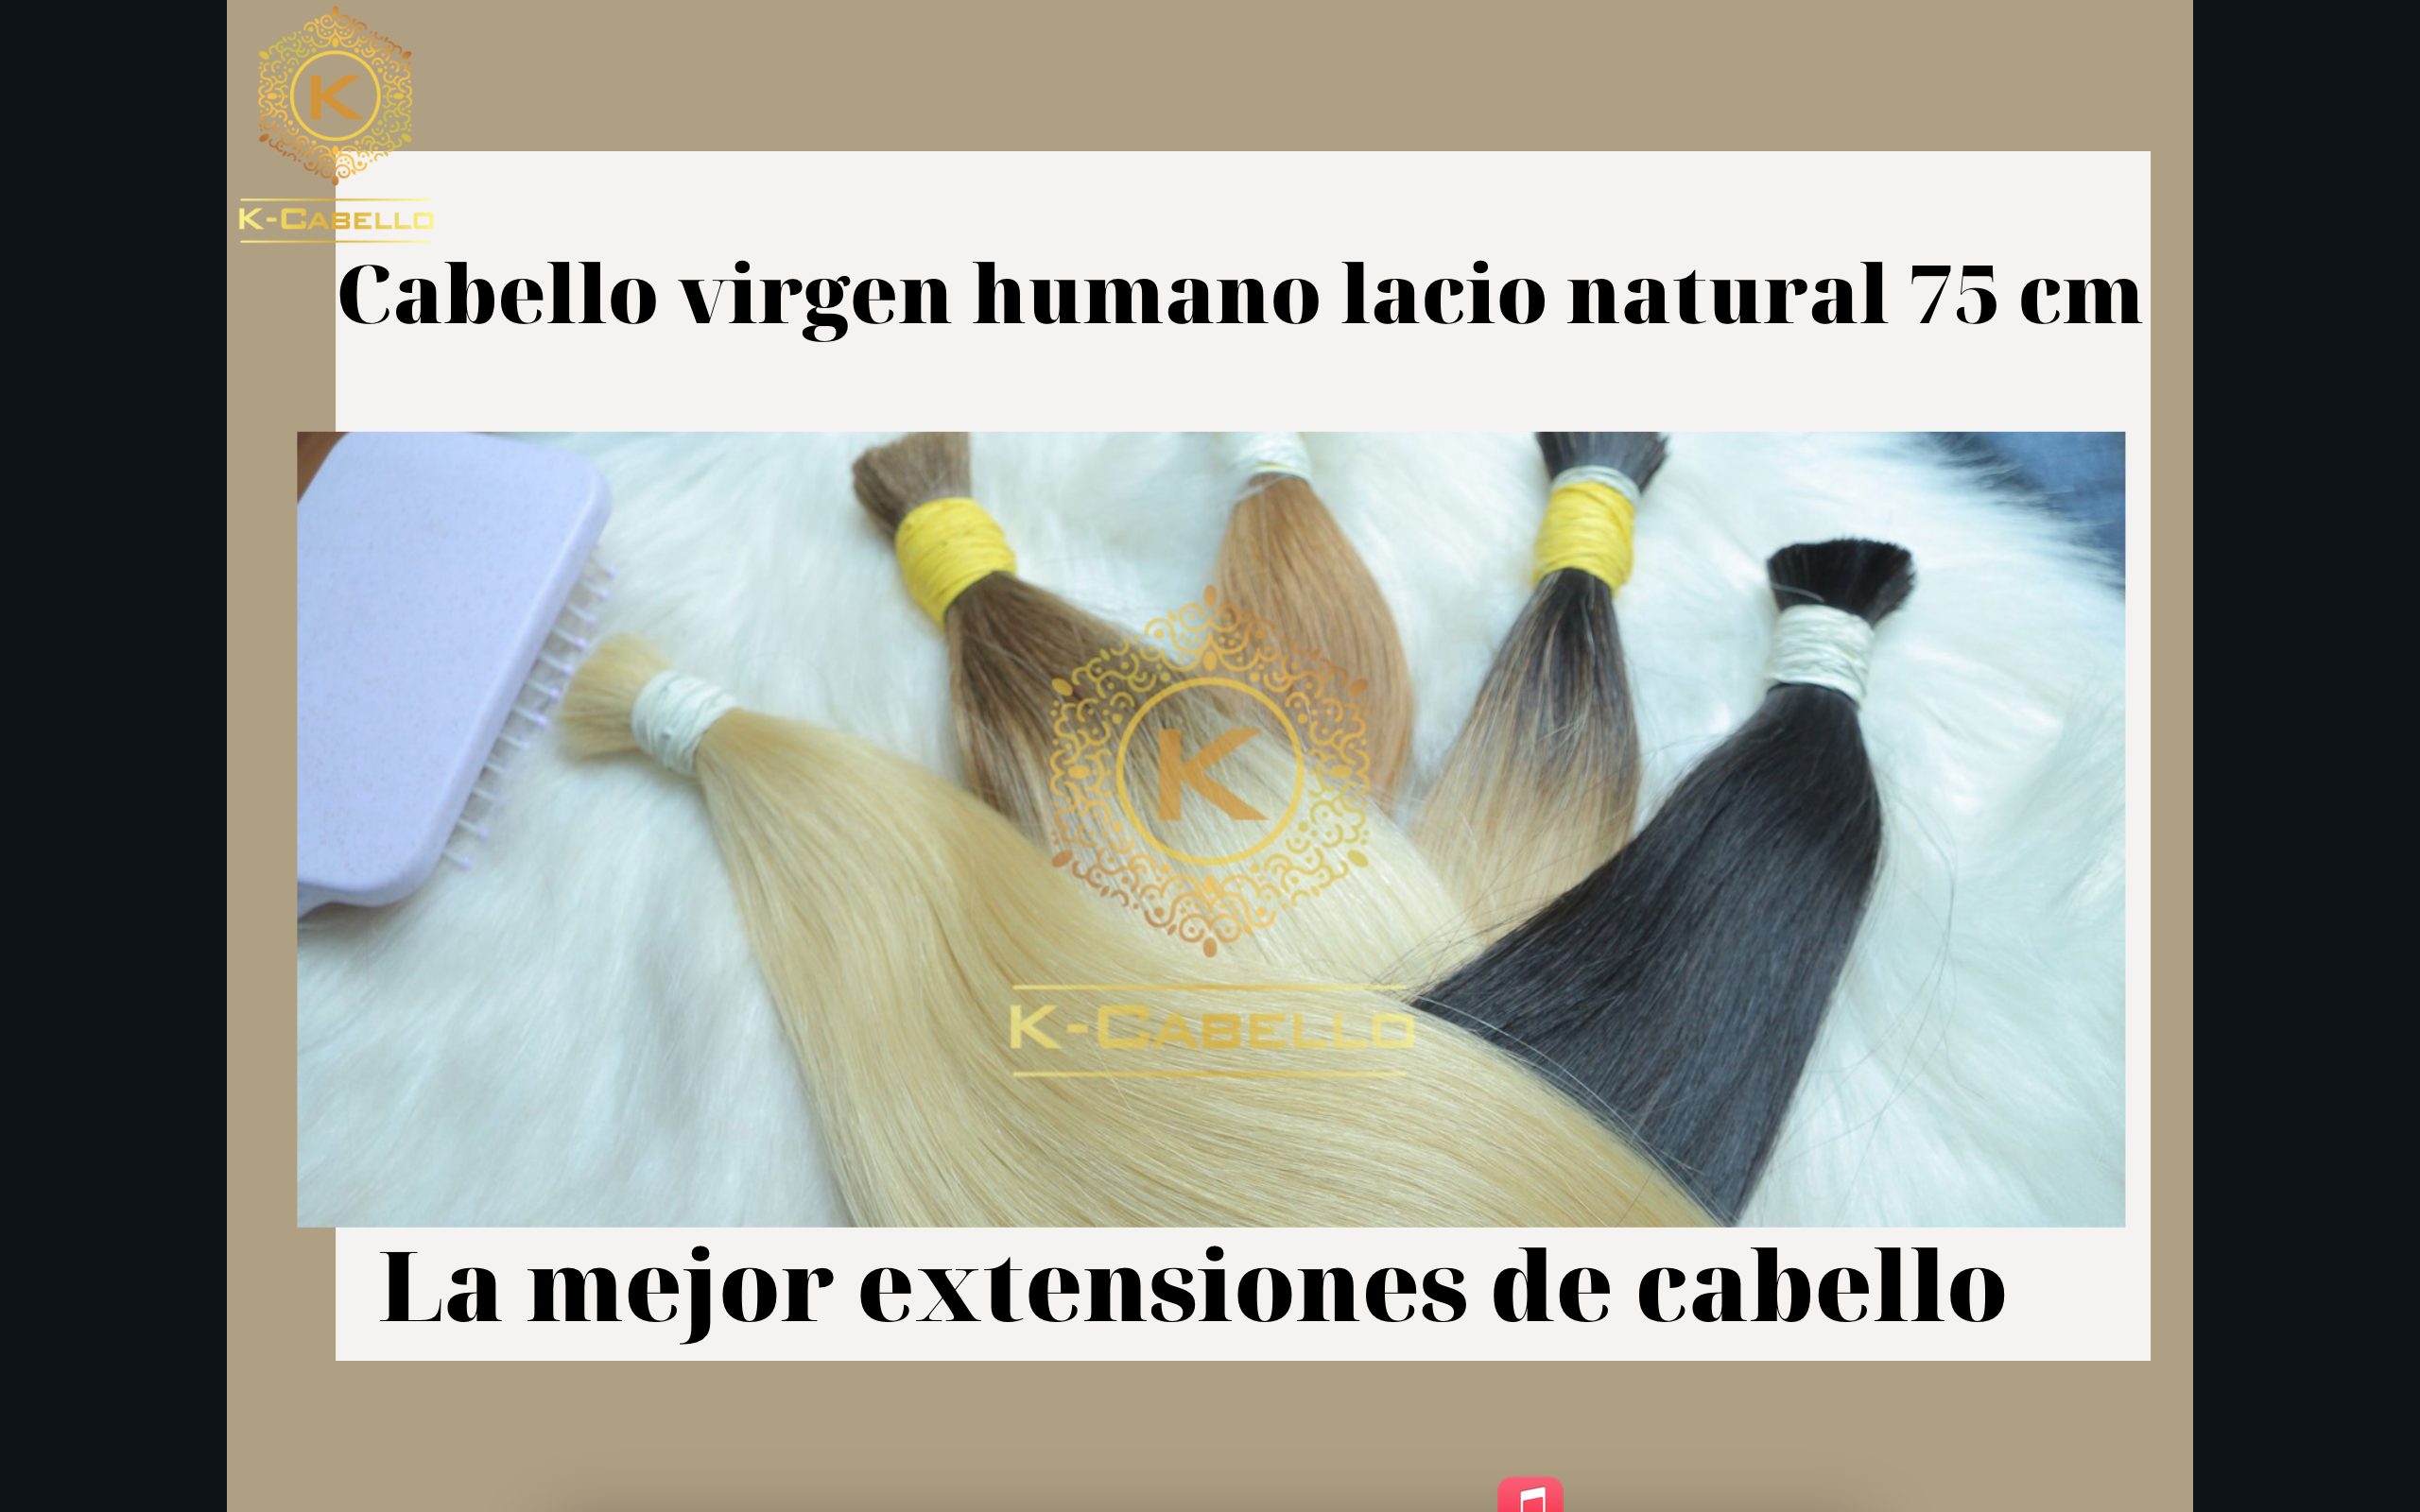 Cabello-virgen-humano-lacio-natural-75-cm-La-mejor-extensiones-de-cabello